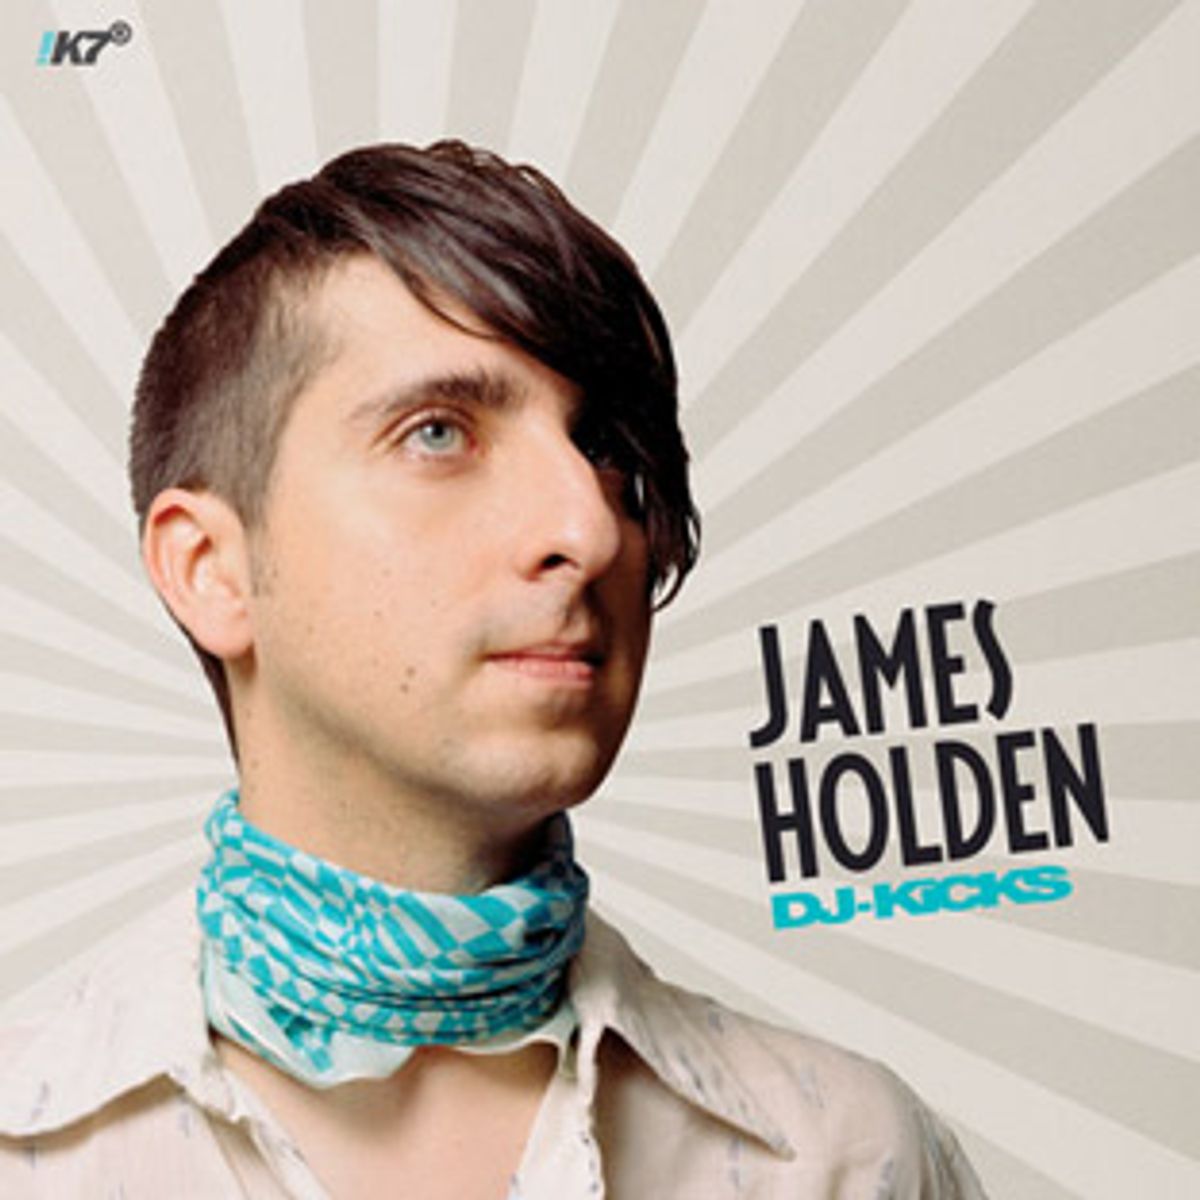 DJ-Kicks: James Holden